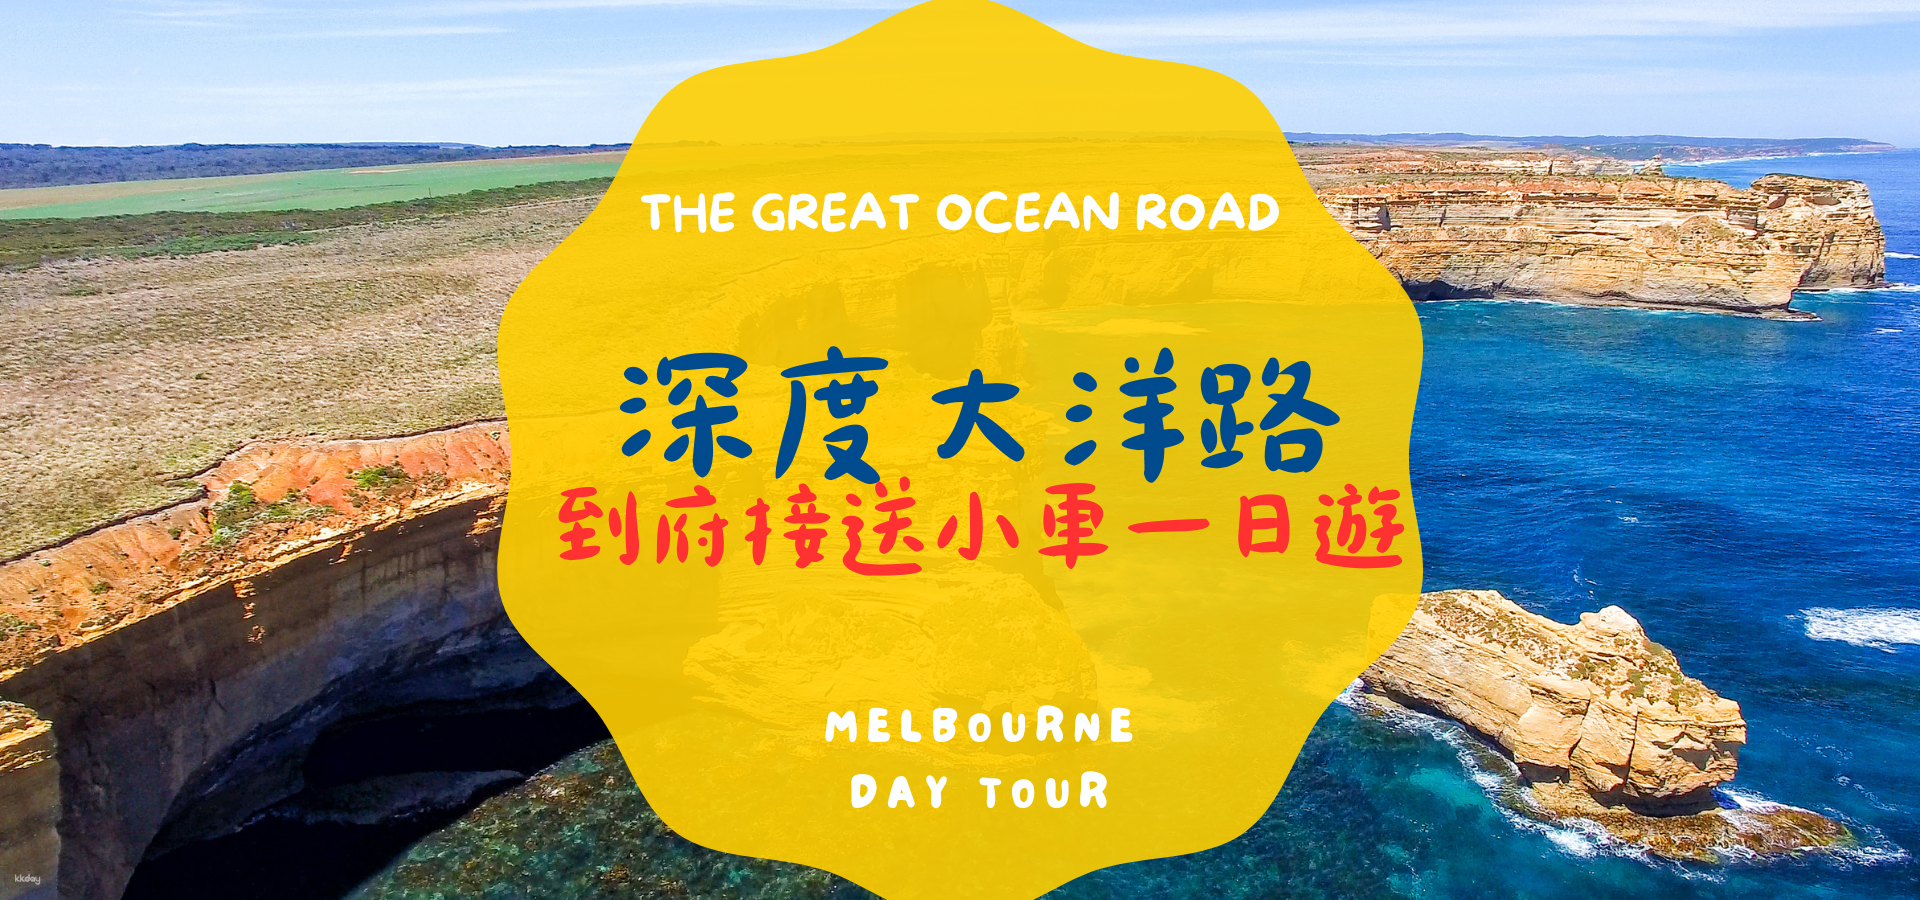 澳洲-墨爾本大洋路超深度一日遊| 舒適小車接送| 中文司機兼導遊隨行